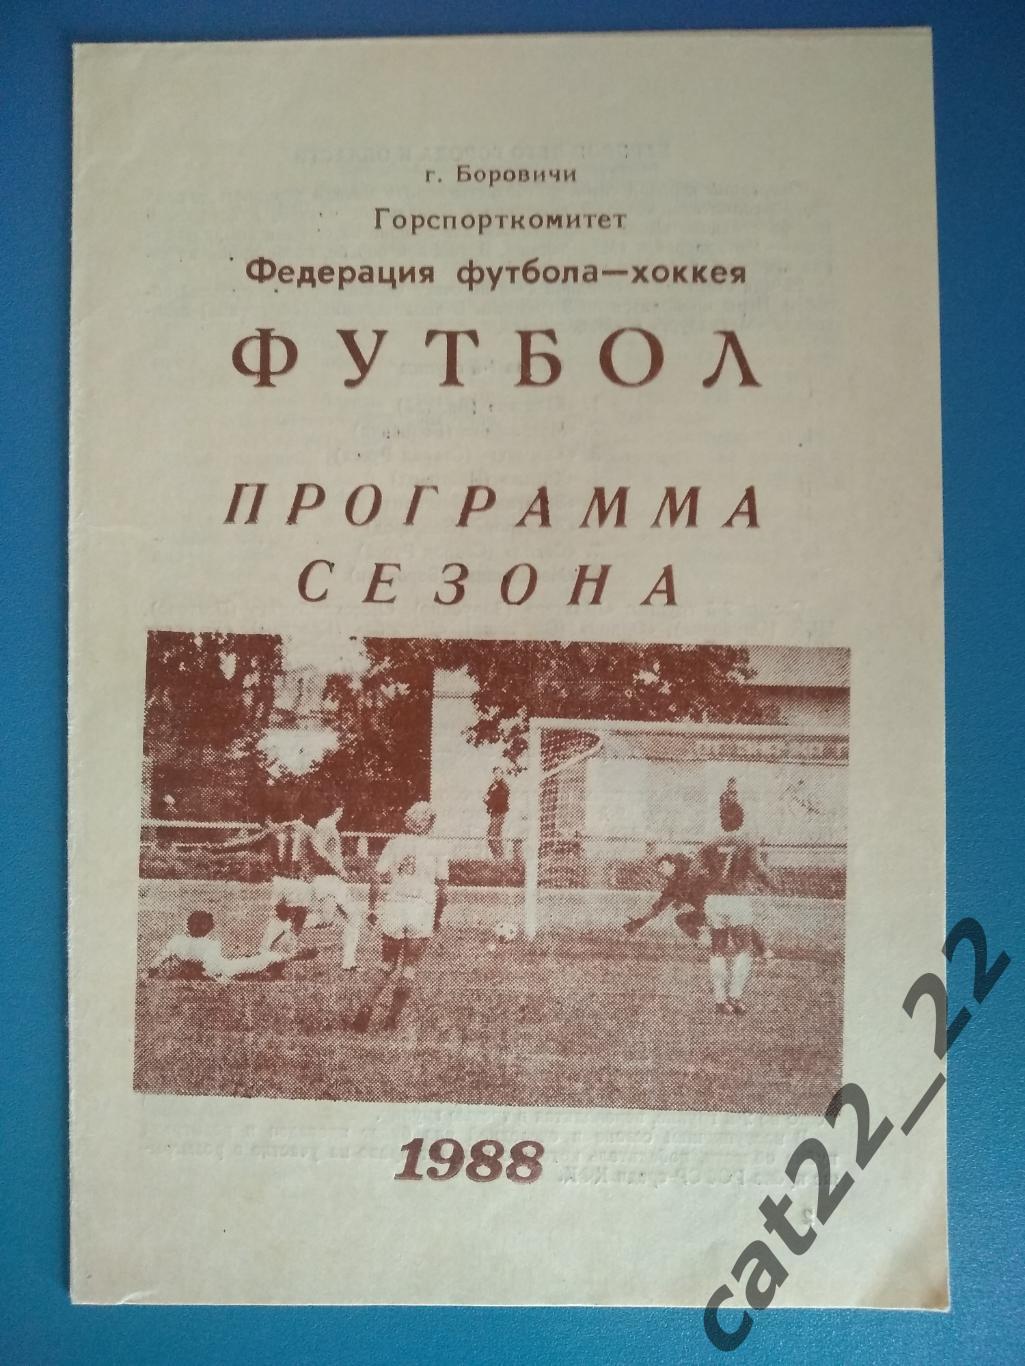 Буклет: Футбол. Хоккей. Боровичи СССР/Россия 1988